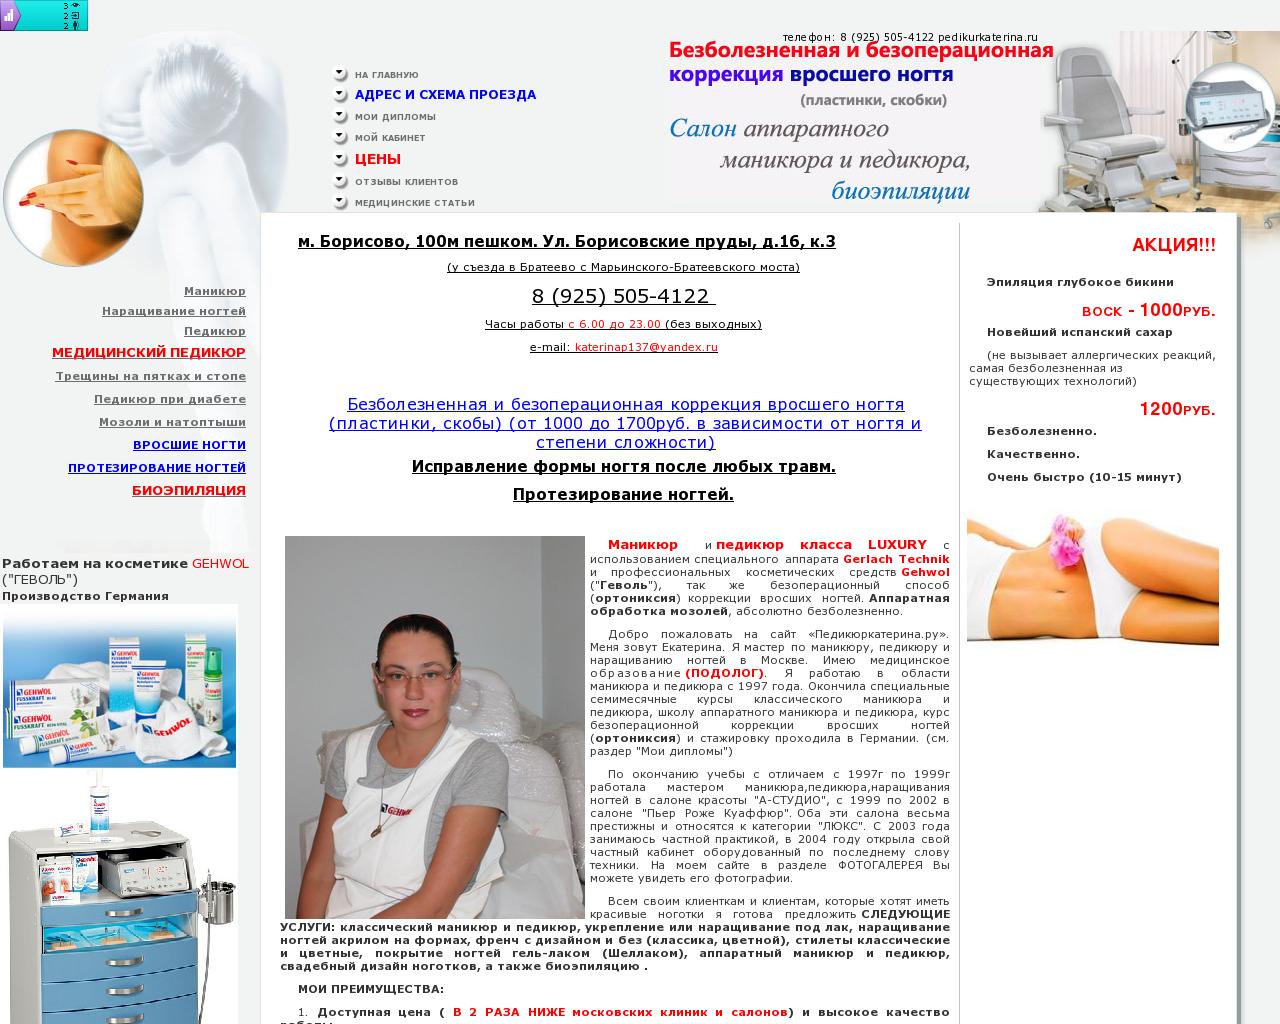 Изображение сайта pedikurkaterina.ru в разрешении 1280x1024